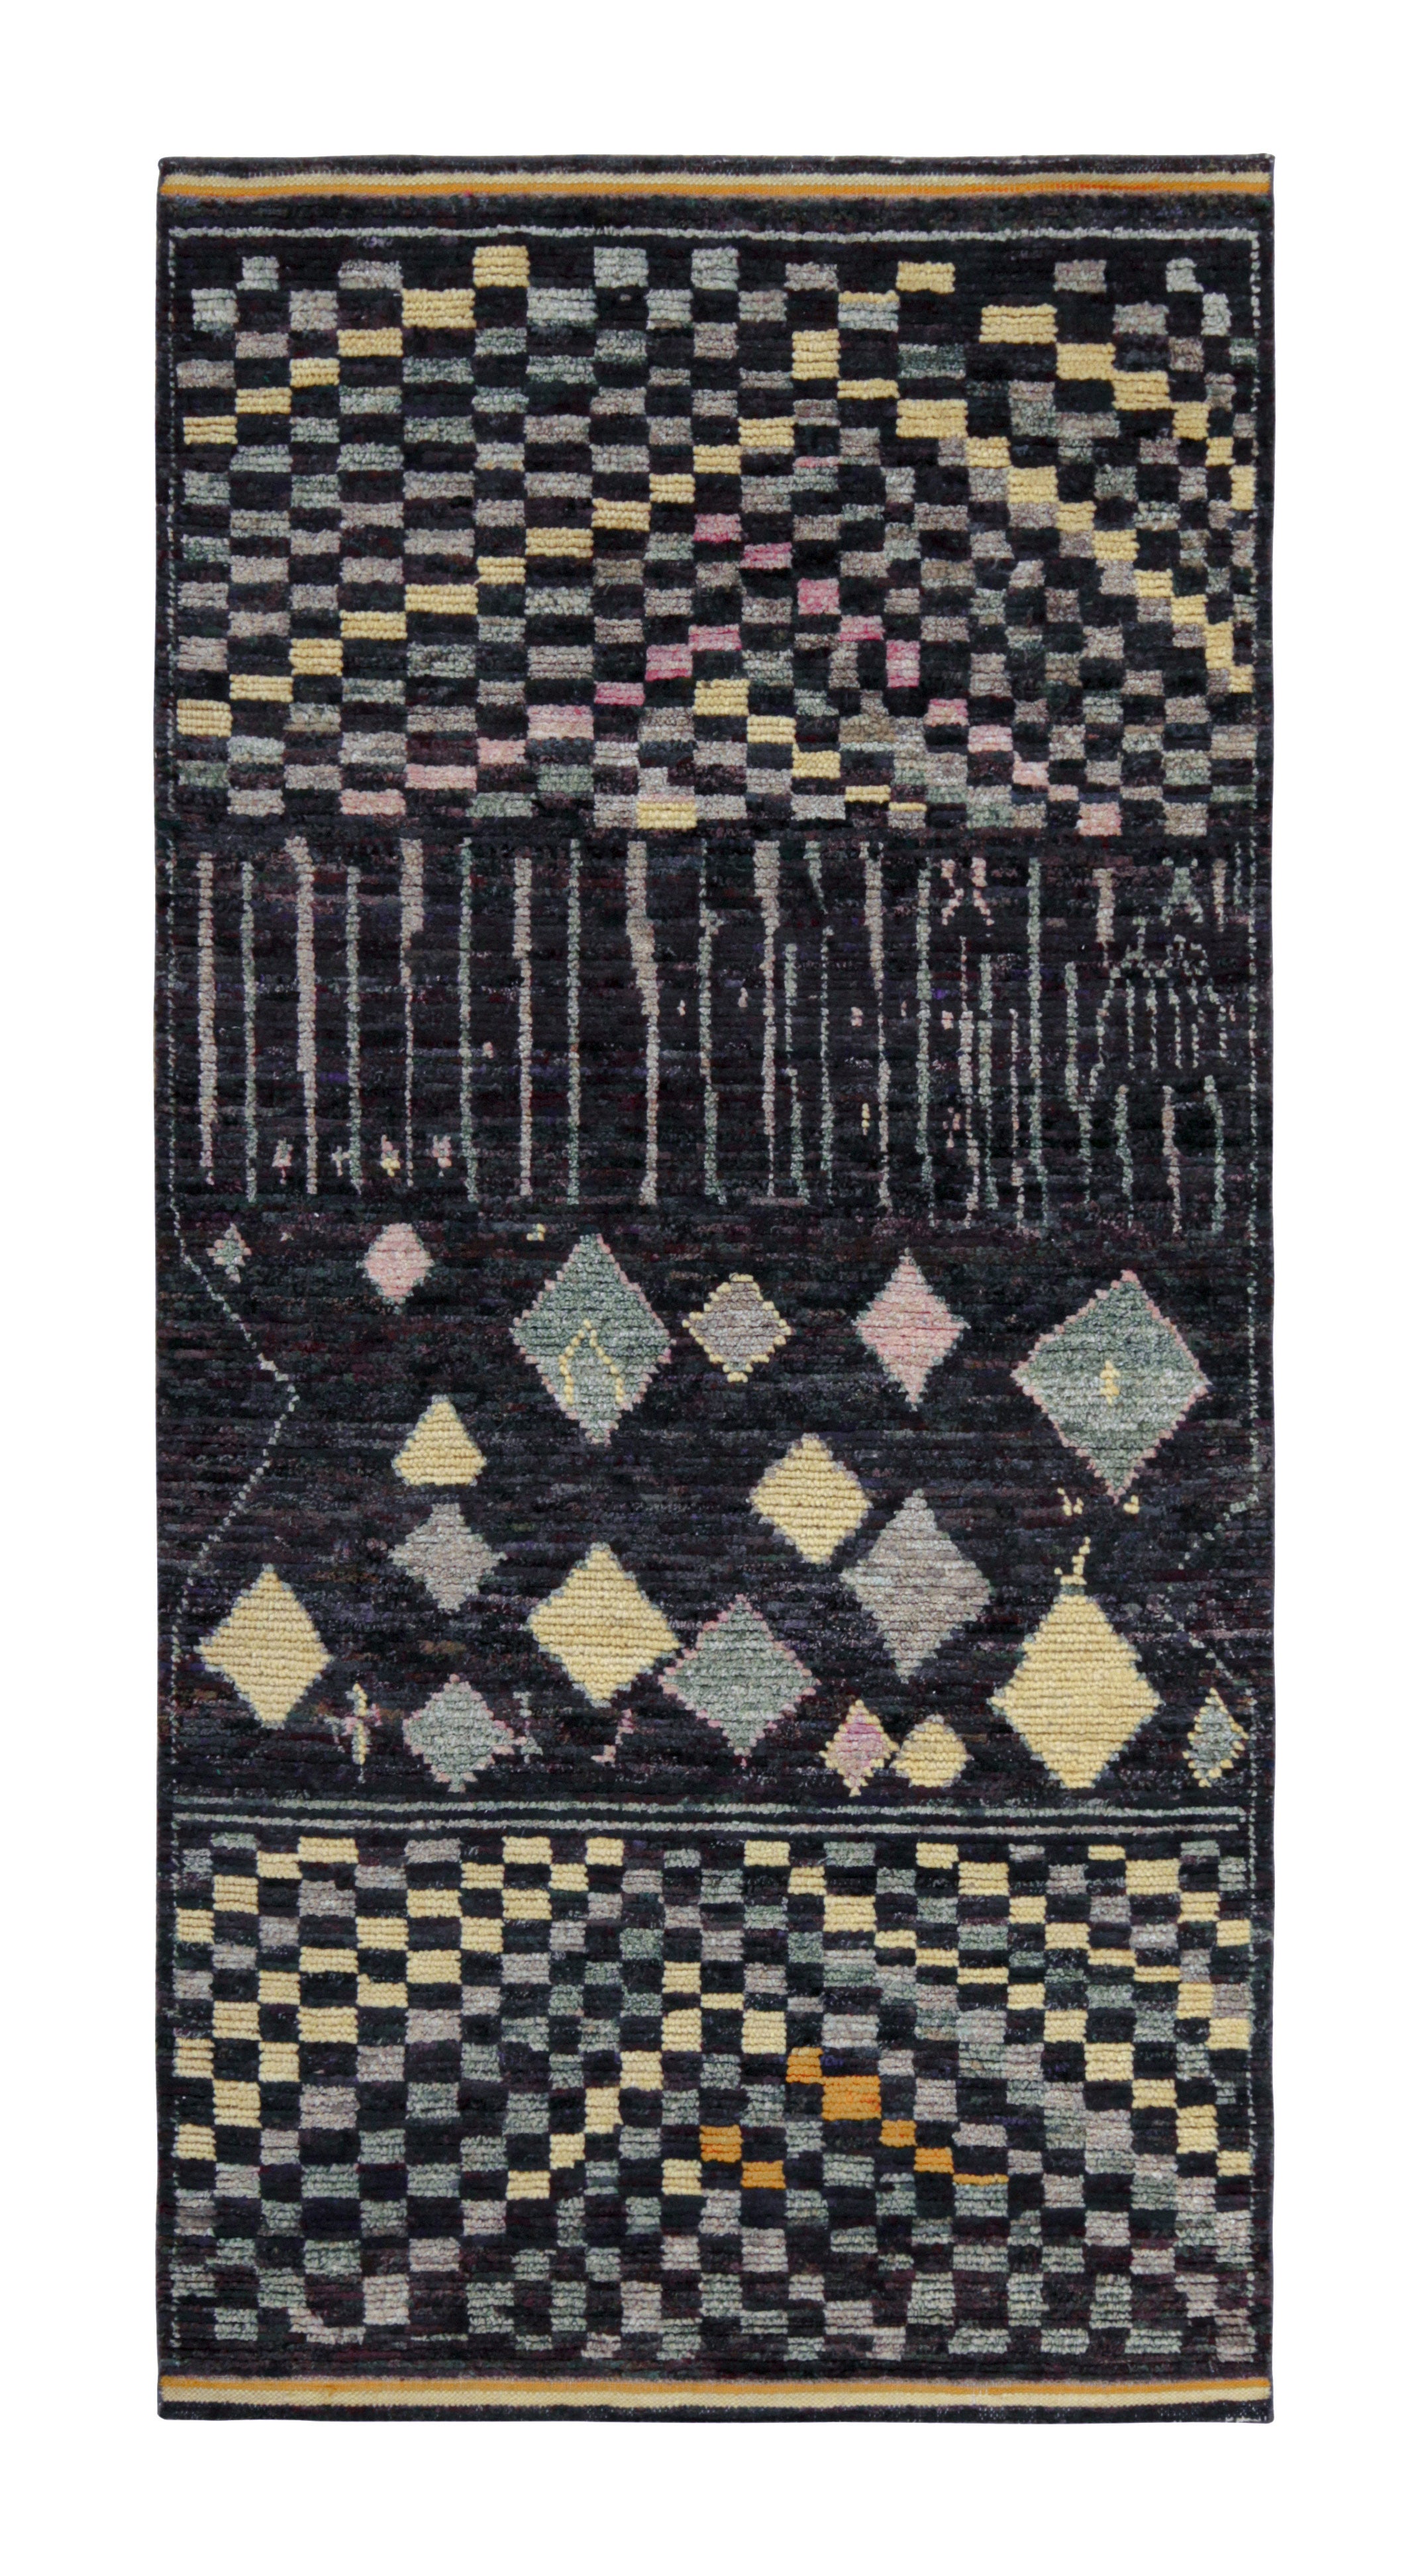 Teppich & Kelim-Teppich im marokkanischen Stil in Schwarz mit buntem geometrischem Muster